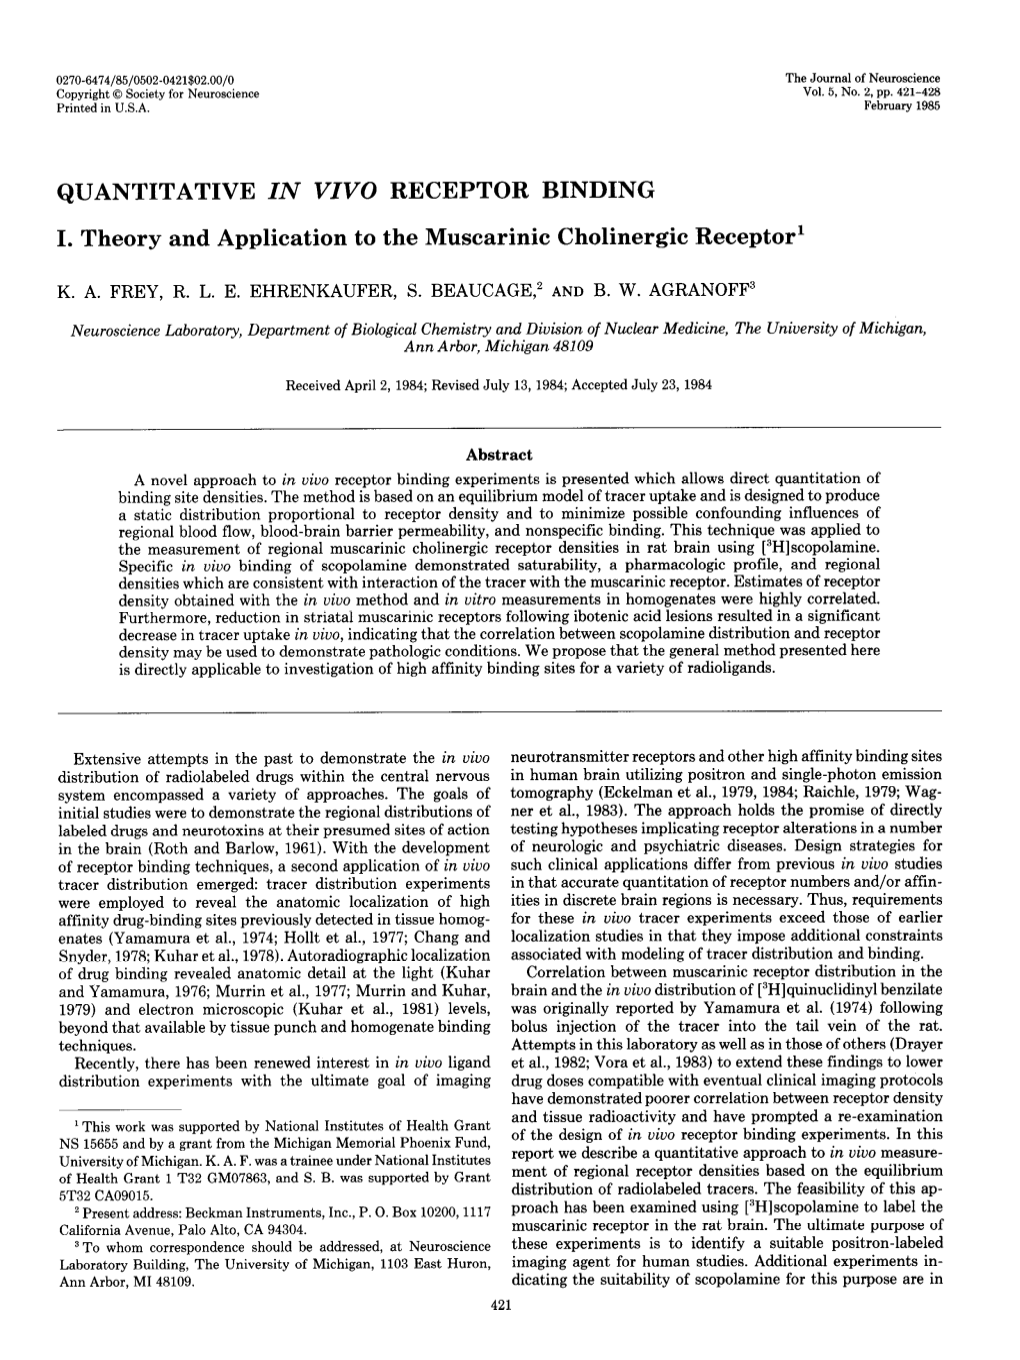 Quantitative in Vivo Receptor Binding